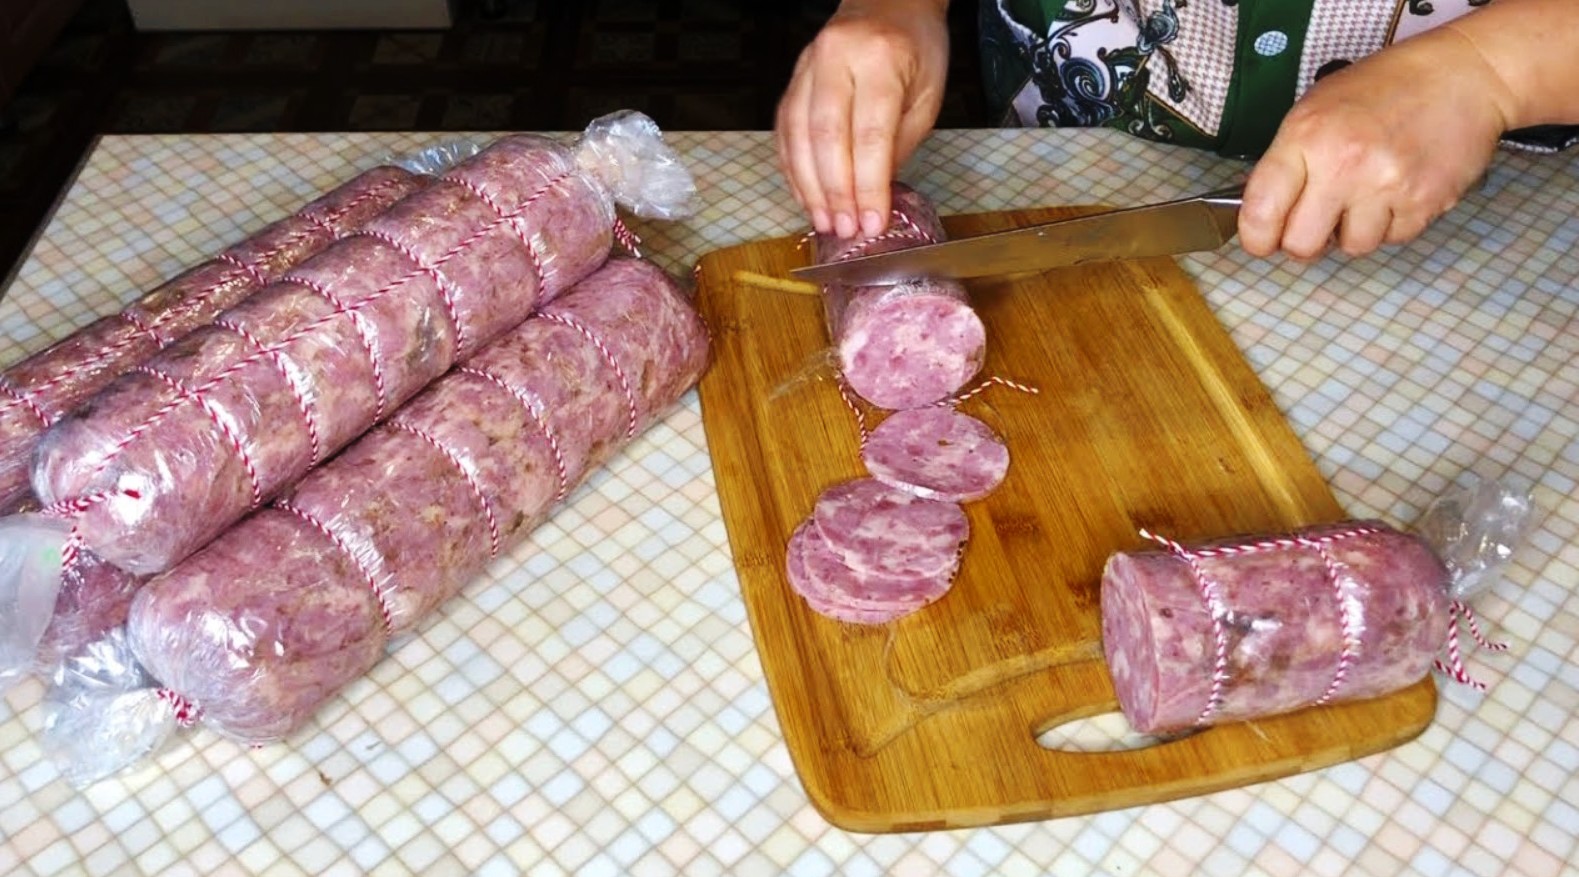 Колбаса в домашних условиях из свинины в кишке с нитритной солью рецепт с фото